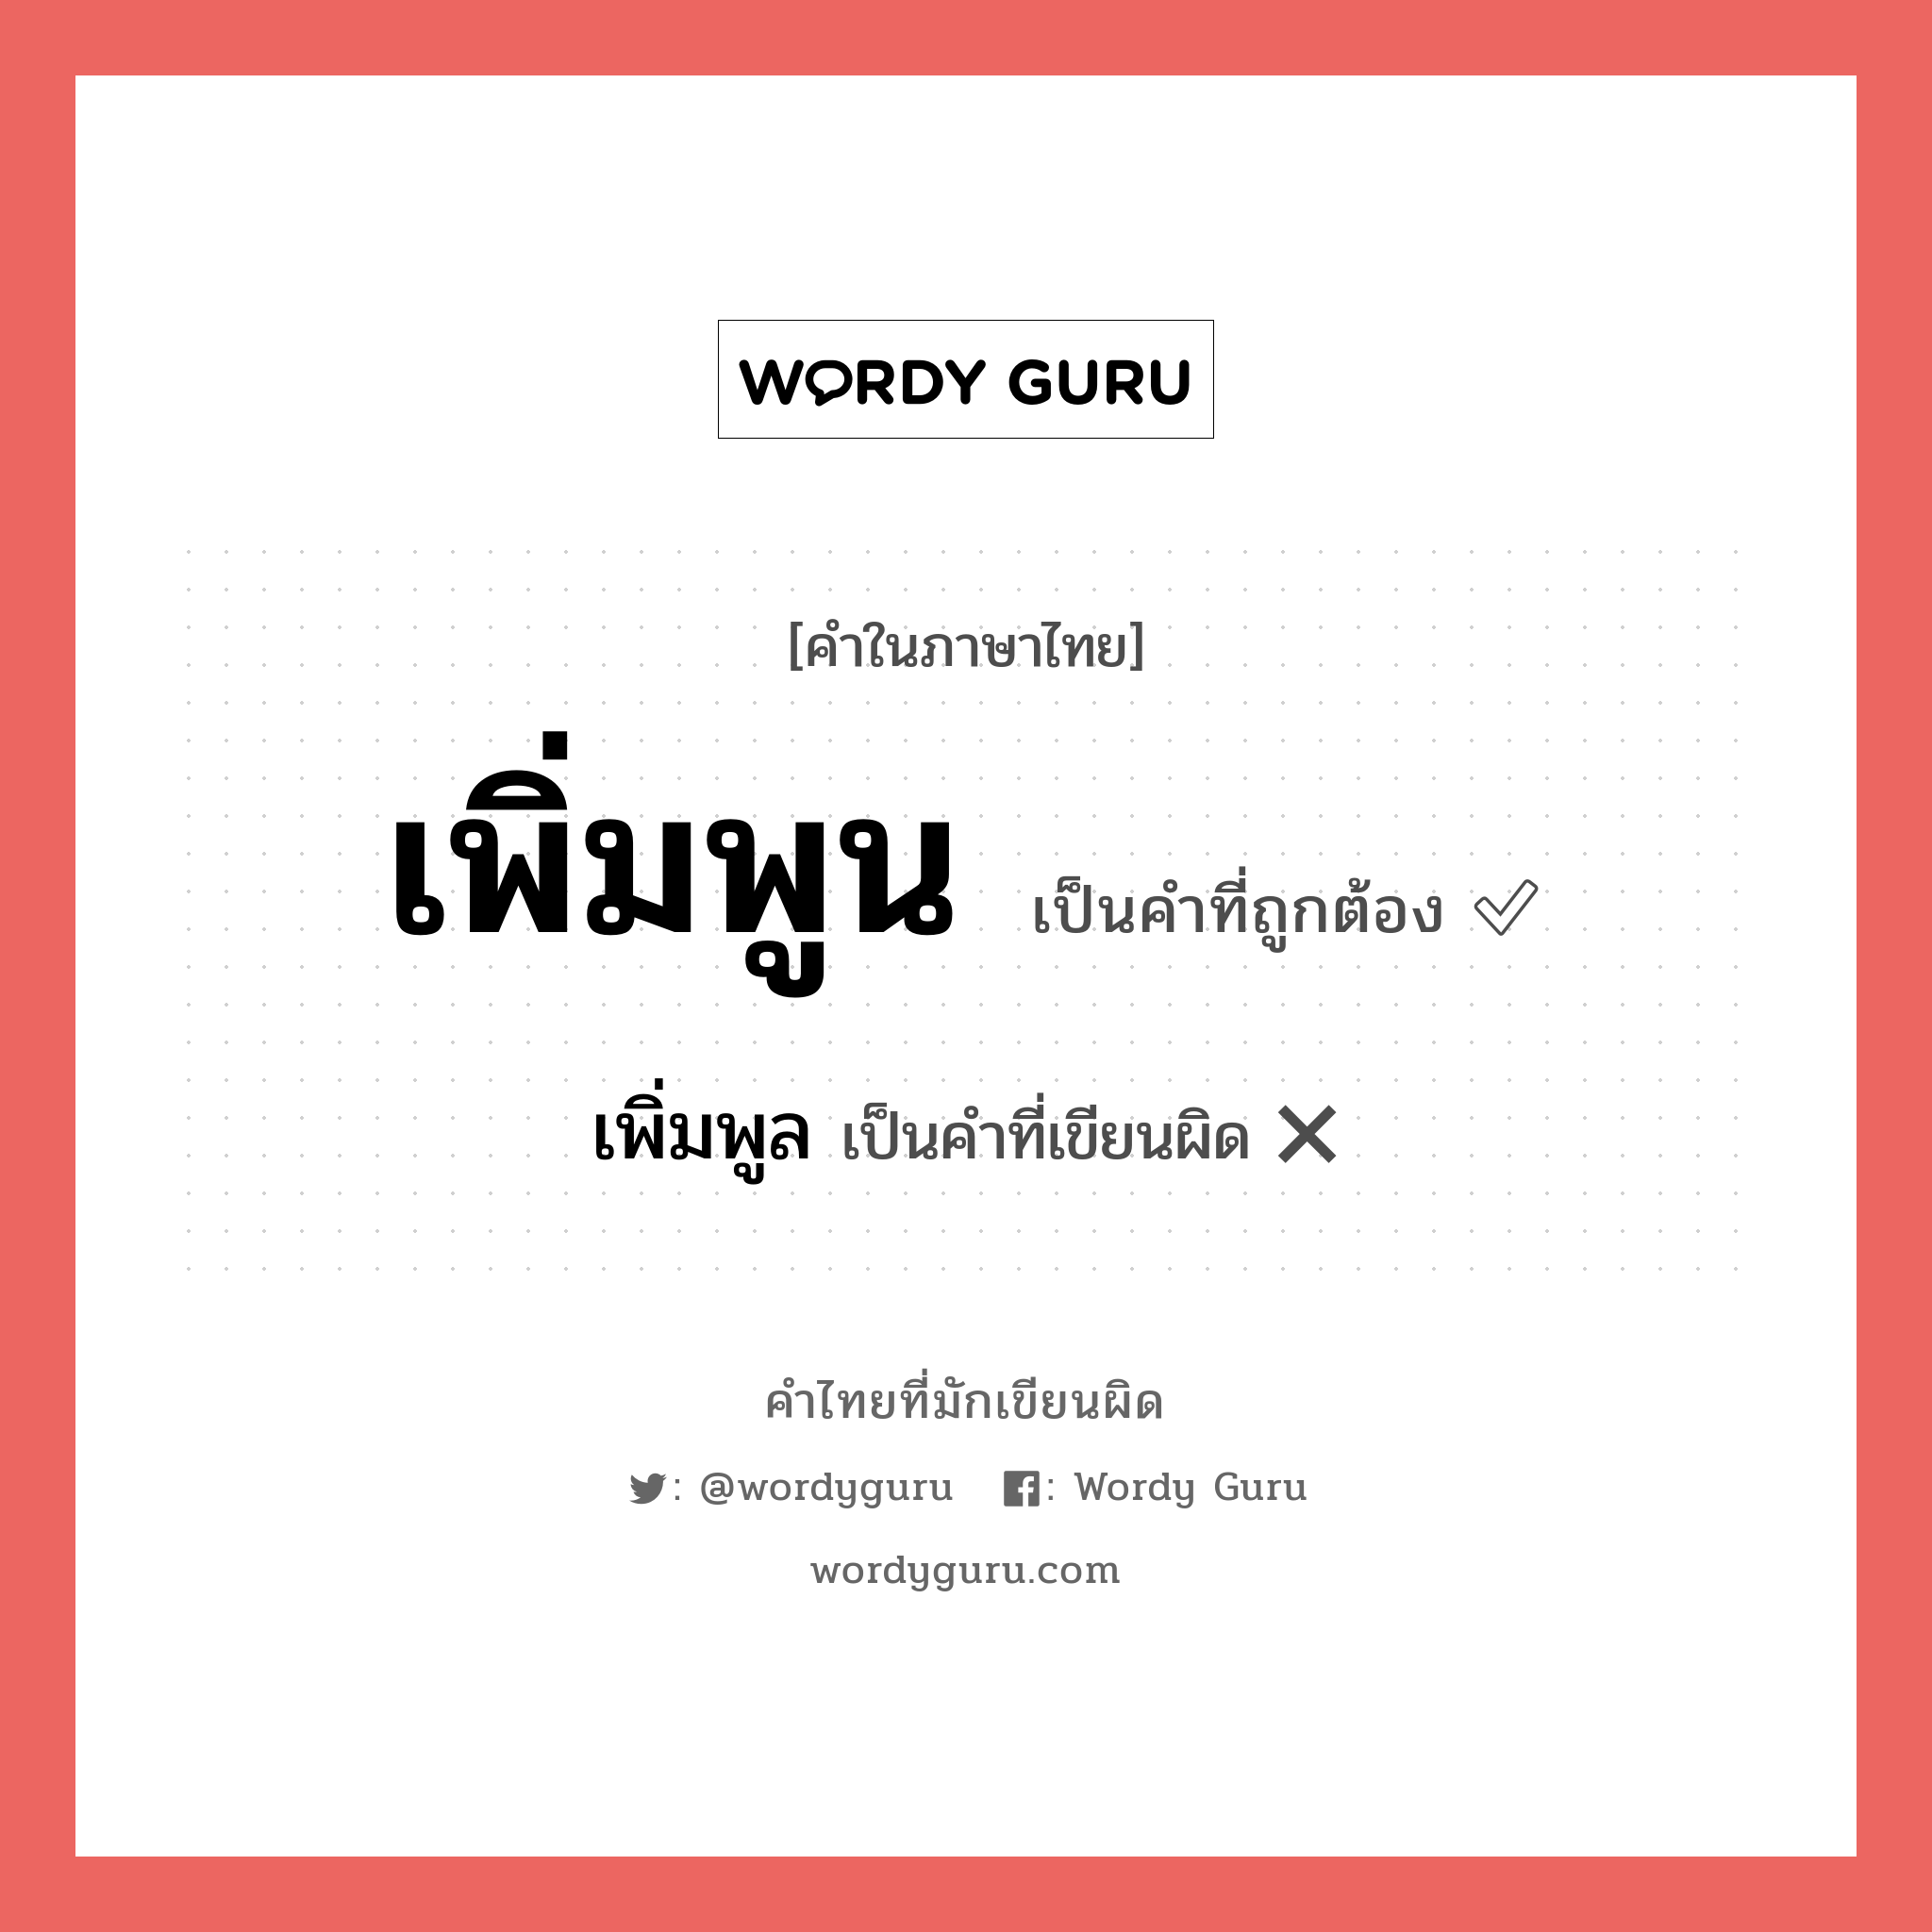 เพิ่มพูน หรือ เพิ่มพูล คำไหนเขียนถูก?, คำในภาษาไทยที่มักเขียนผิด เพิ่มพูน คำที่ผิด ❌ เพิ่มพูล